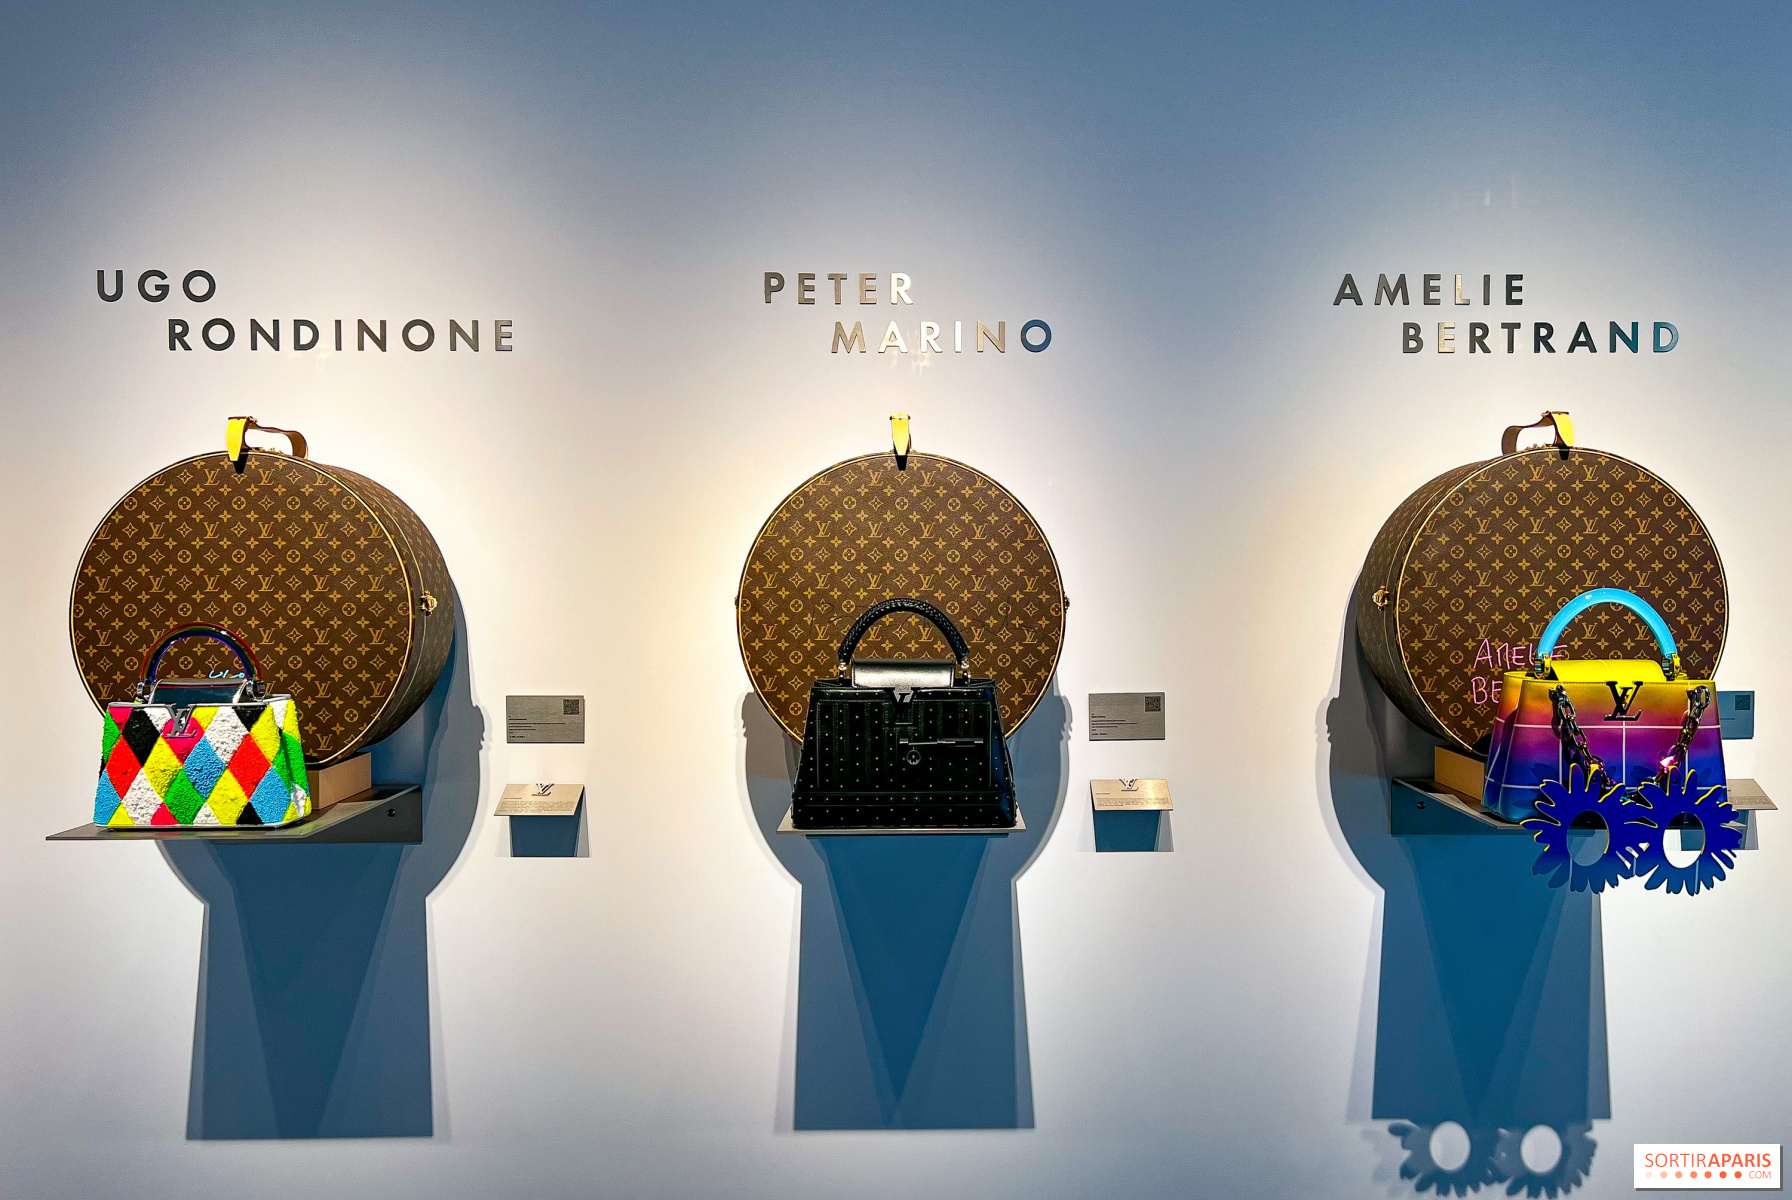 Louis Vuitton opens an exhibition and café in Paris